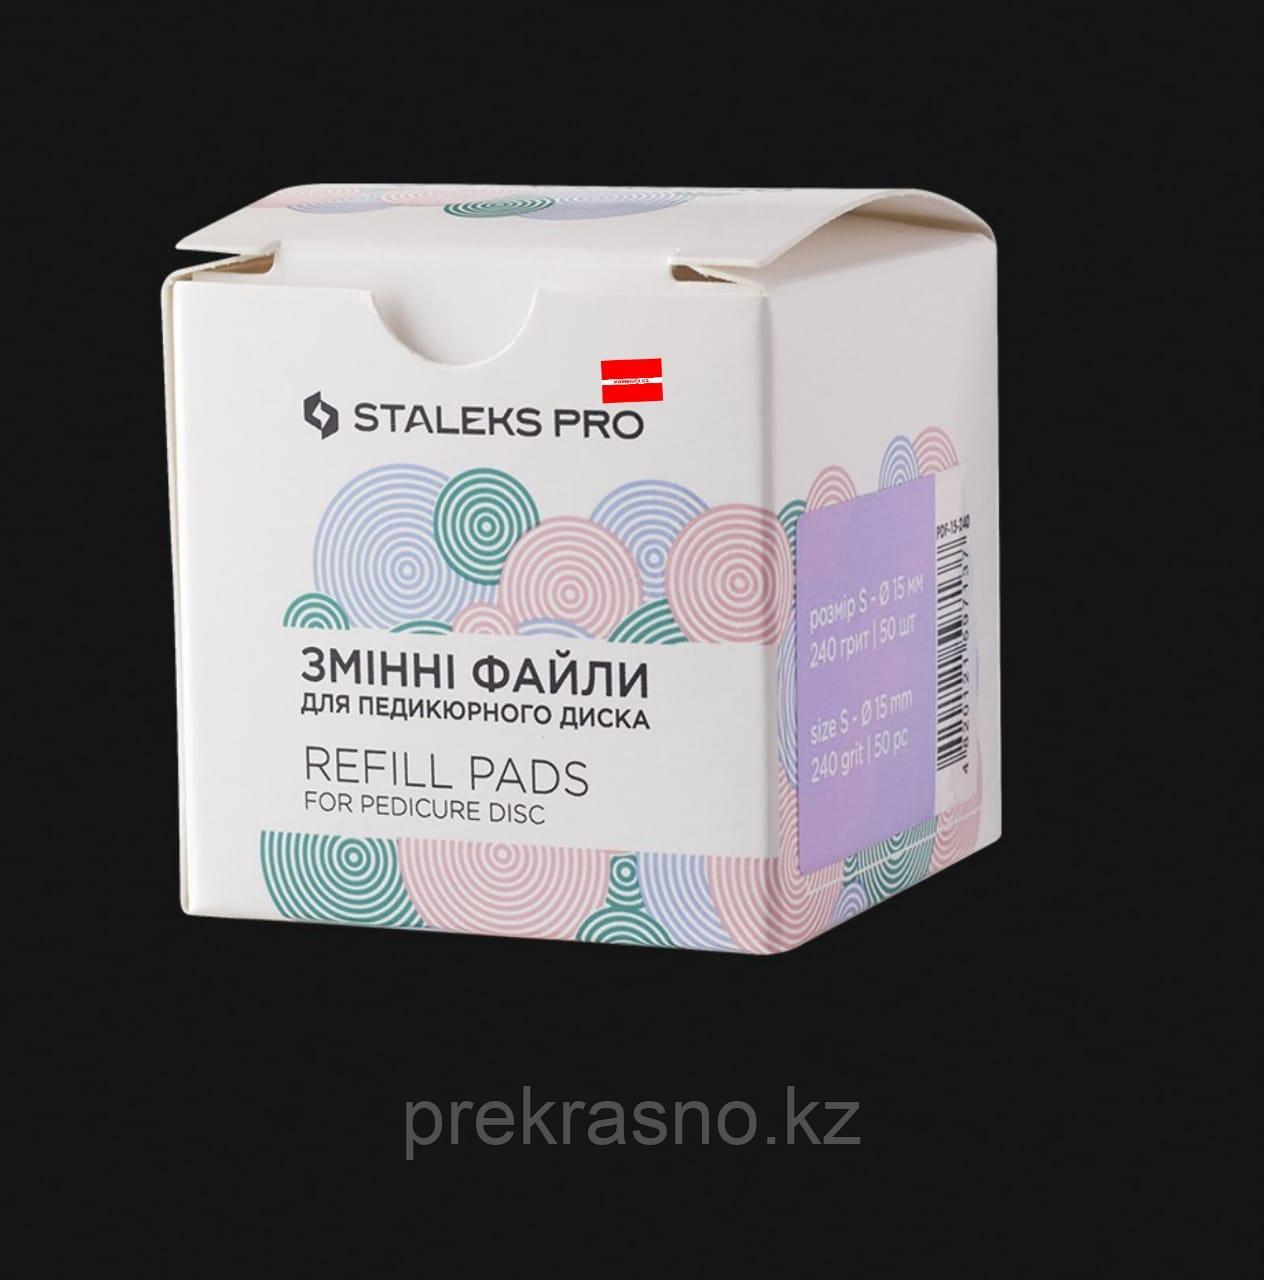 Сменные файлы для педикюрного диска PODODISK STALEKS PRO XS (50 ШТ) в ассортименте